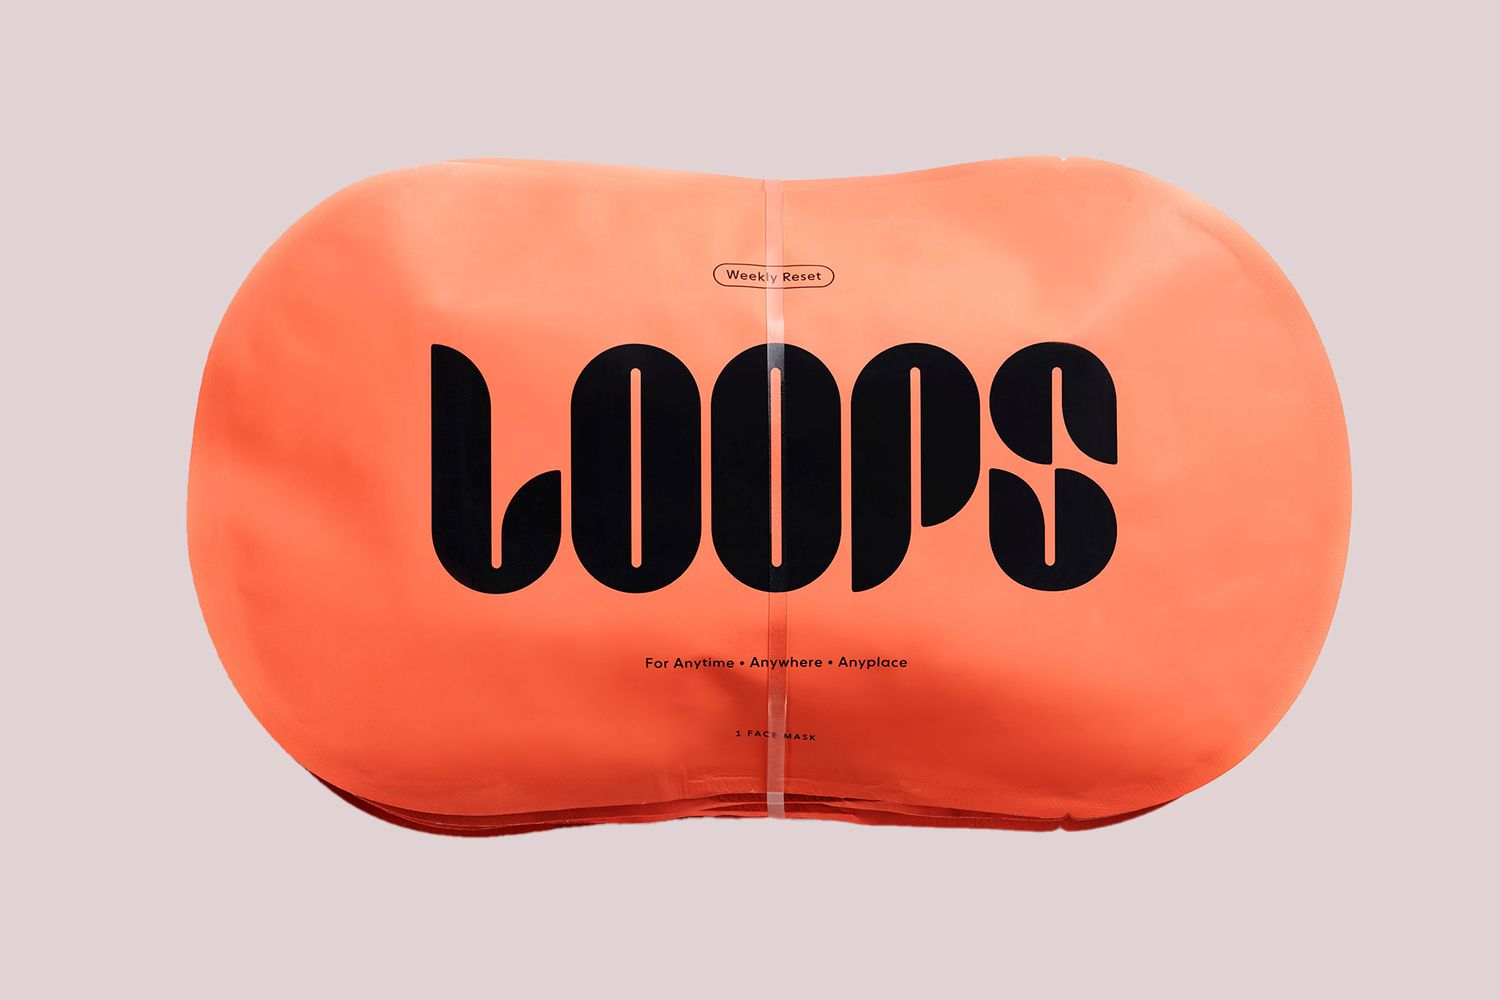 loops-weekly-reset